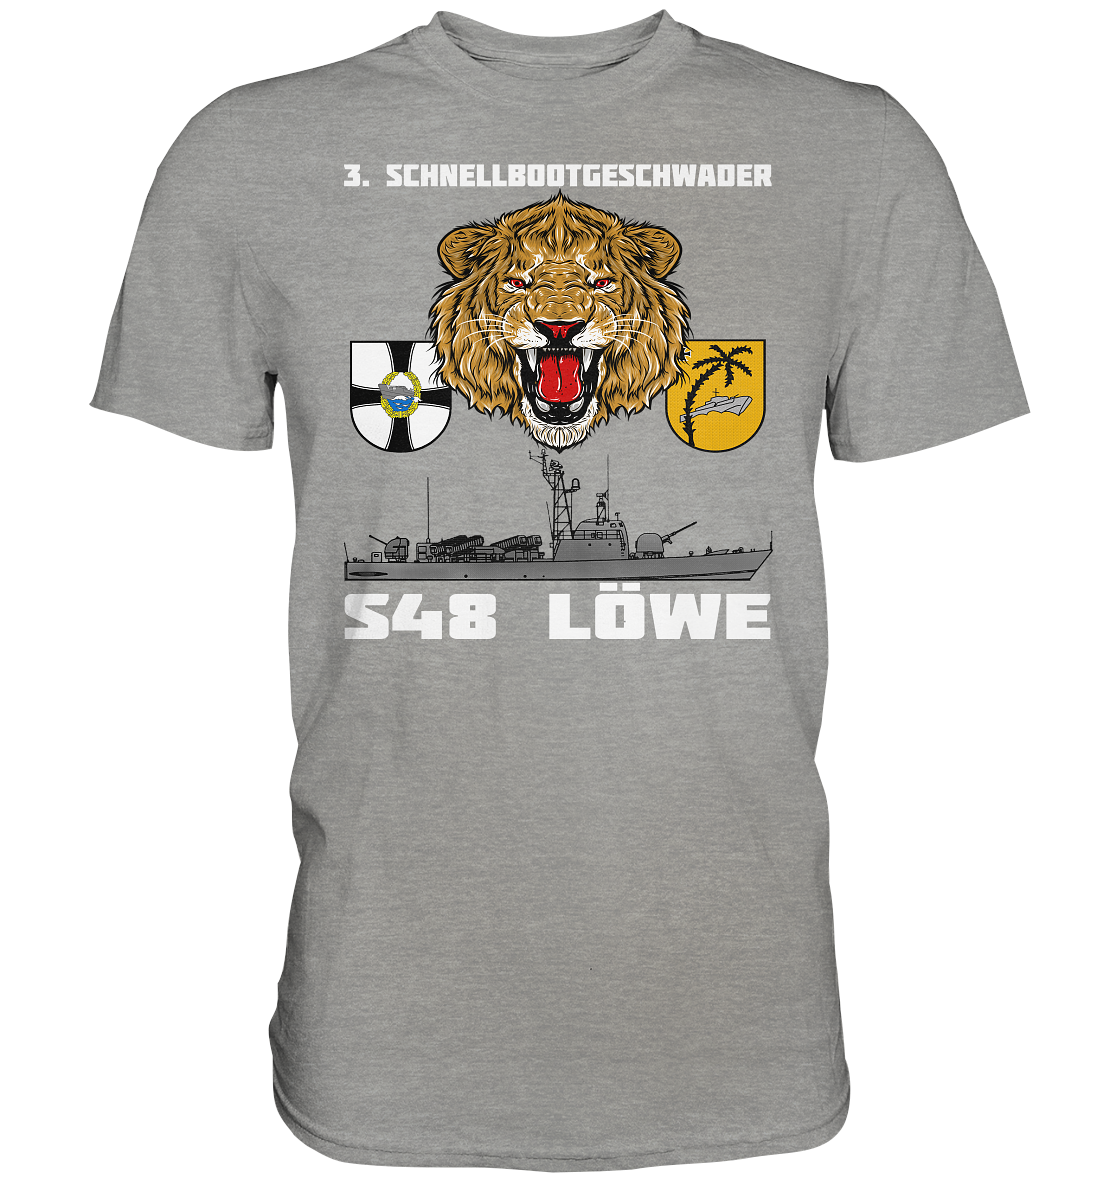 S48 LÖWE - Premium Shirt